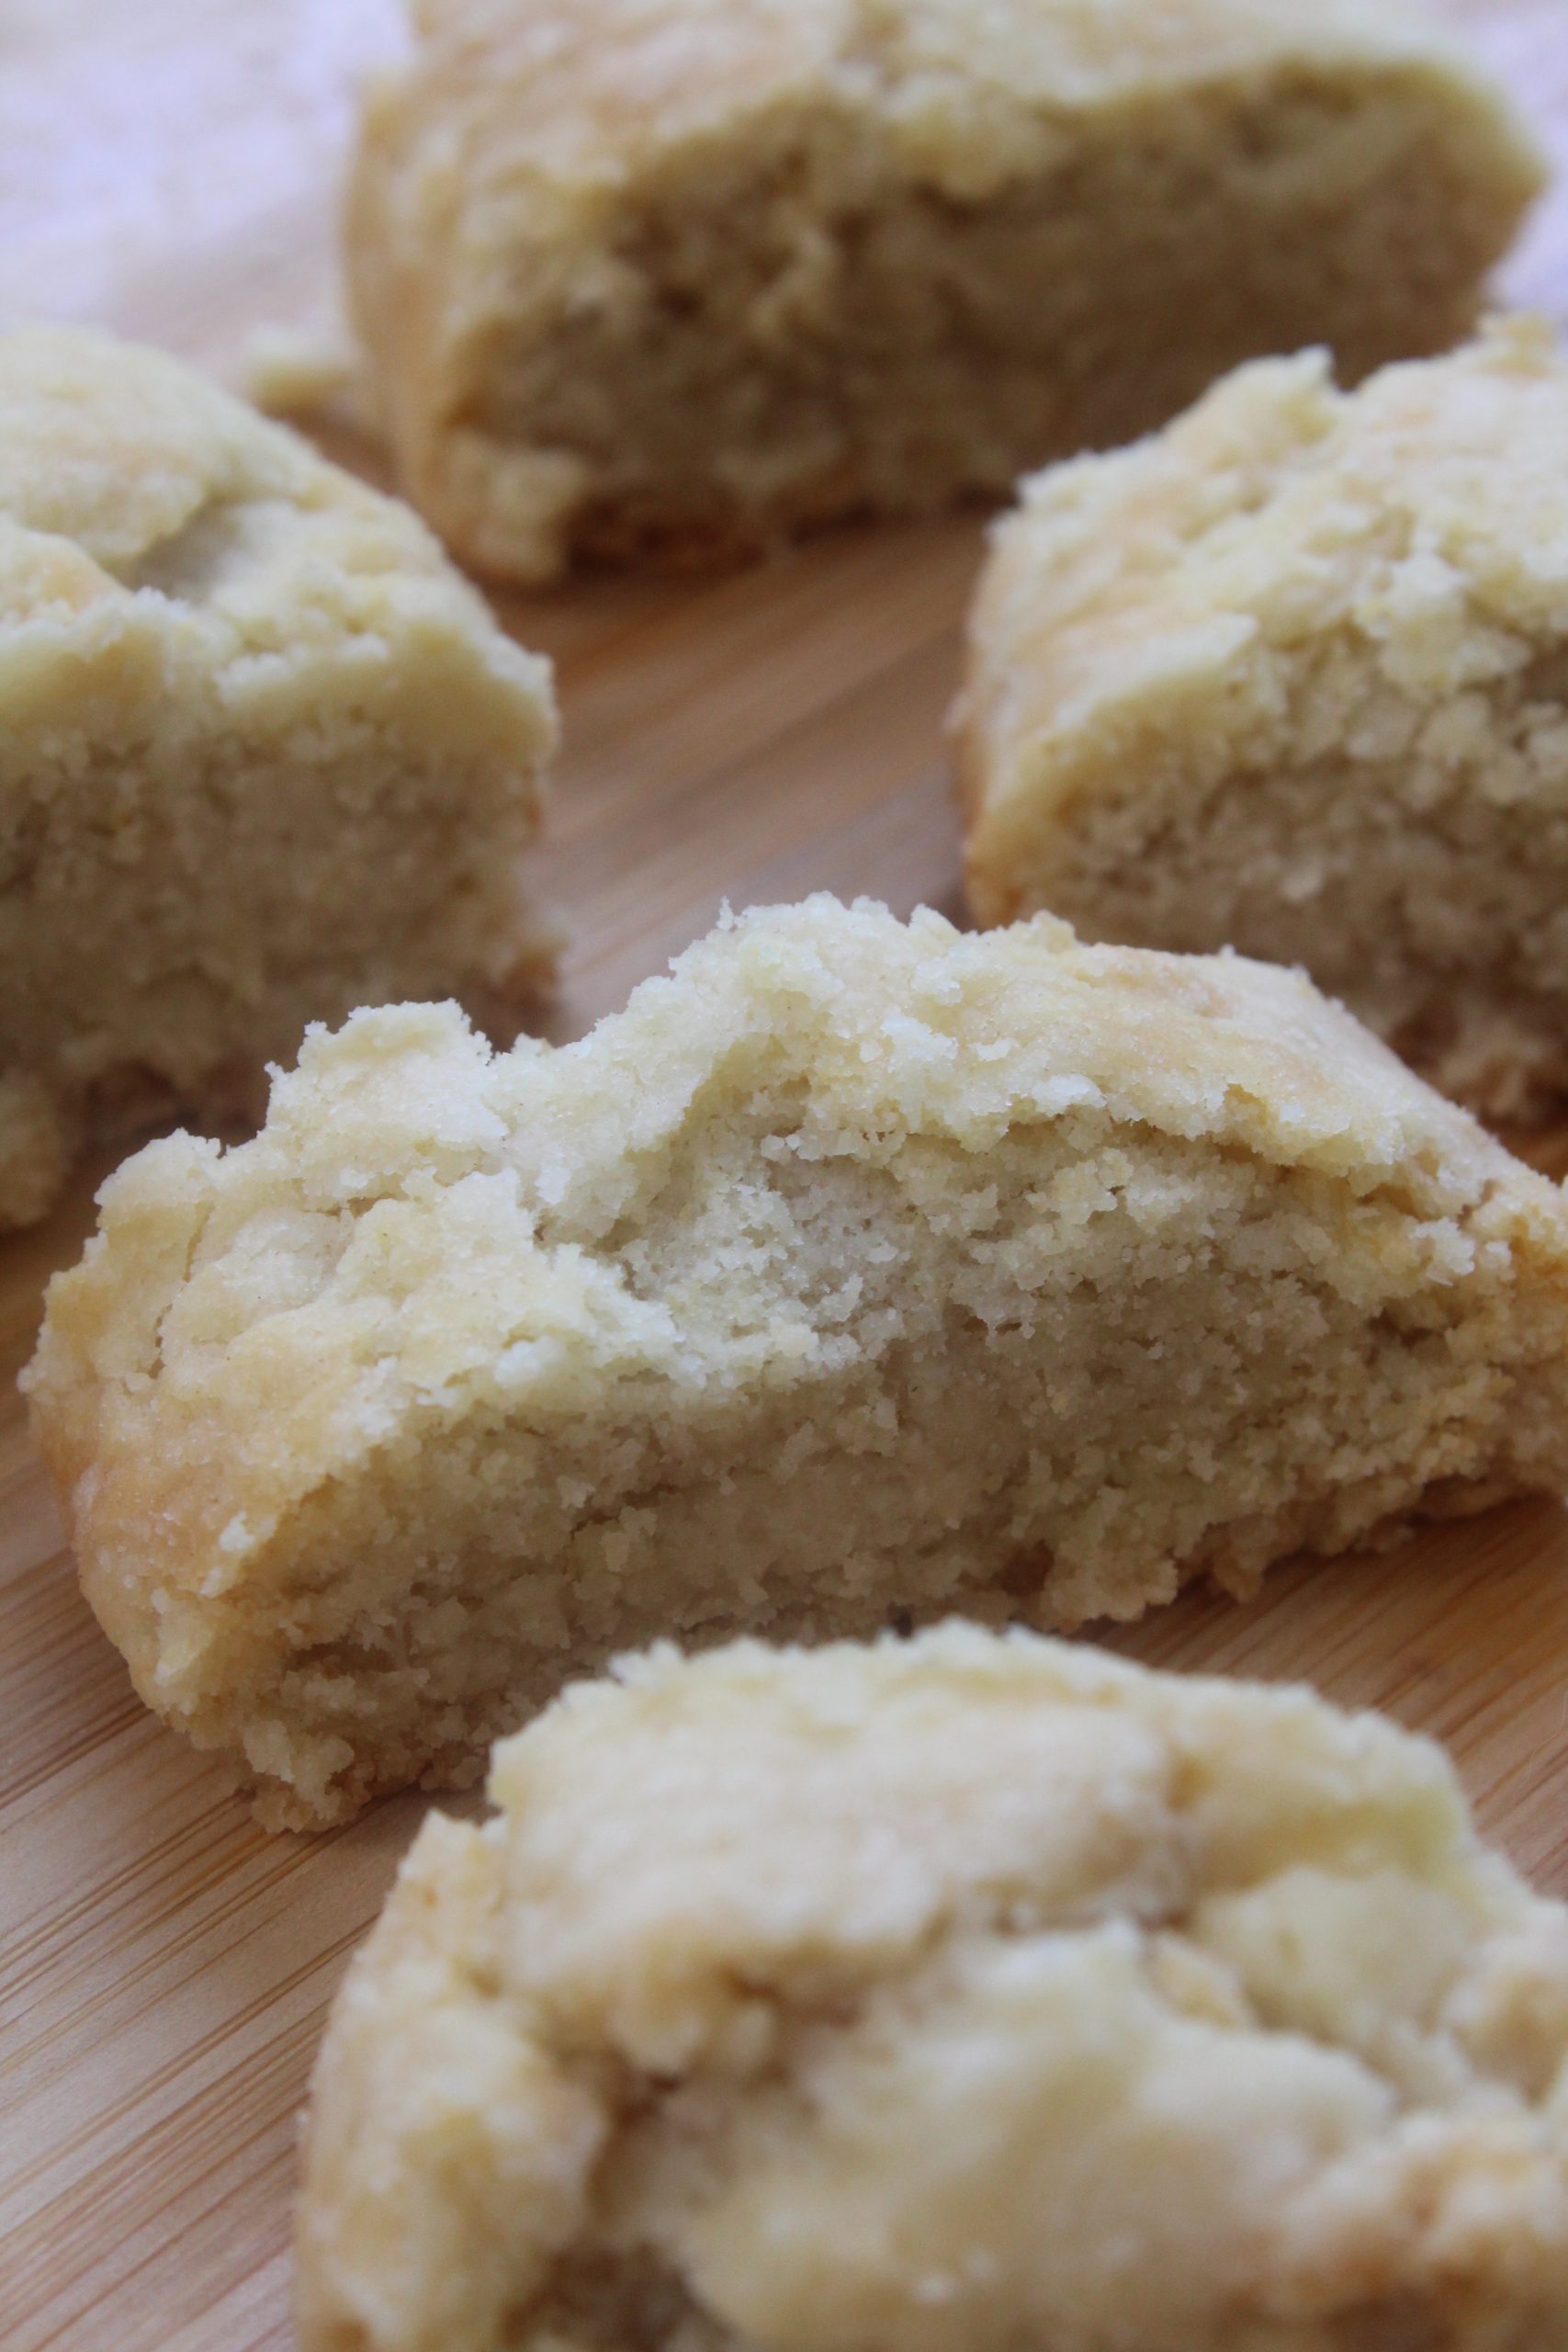 עוגיות מגולגלות חלווה עם טחינה, ממרח חלבה וקוקוס: אופציה לעוגיות פרווה וטבעוניות!